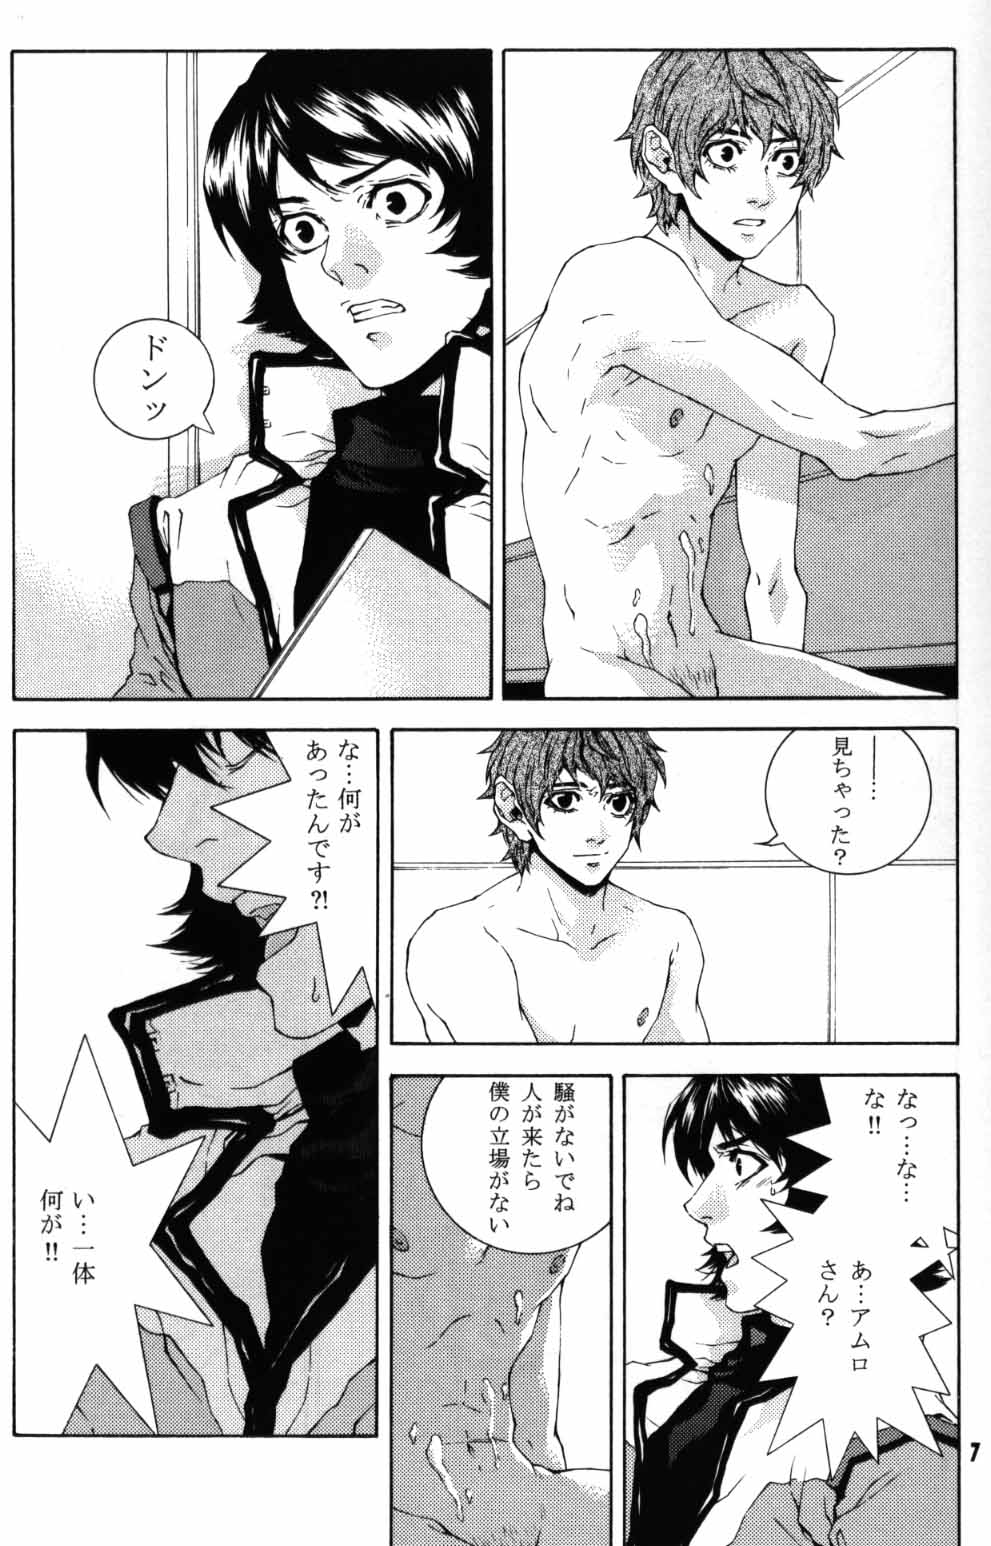 [APART (Yanagisawa Yukio)] Koi no you na Bakemono ga. (Zeta Gundam) page 5 full